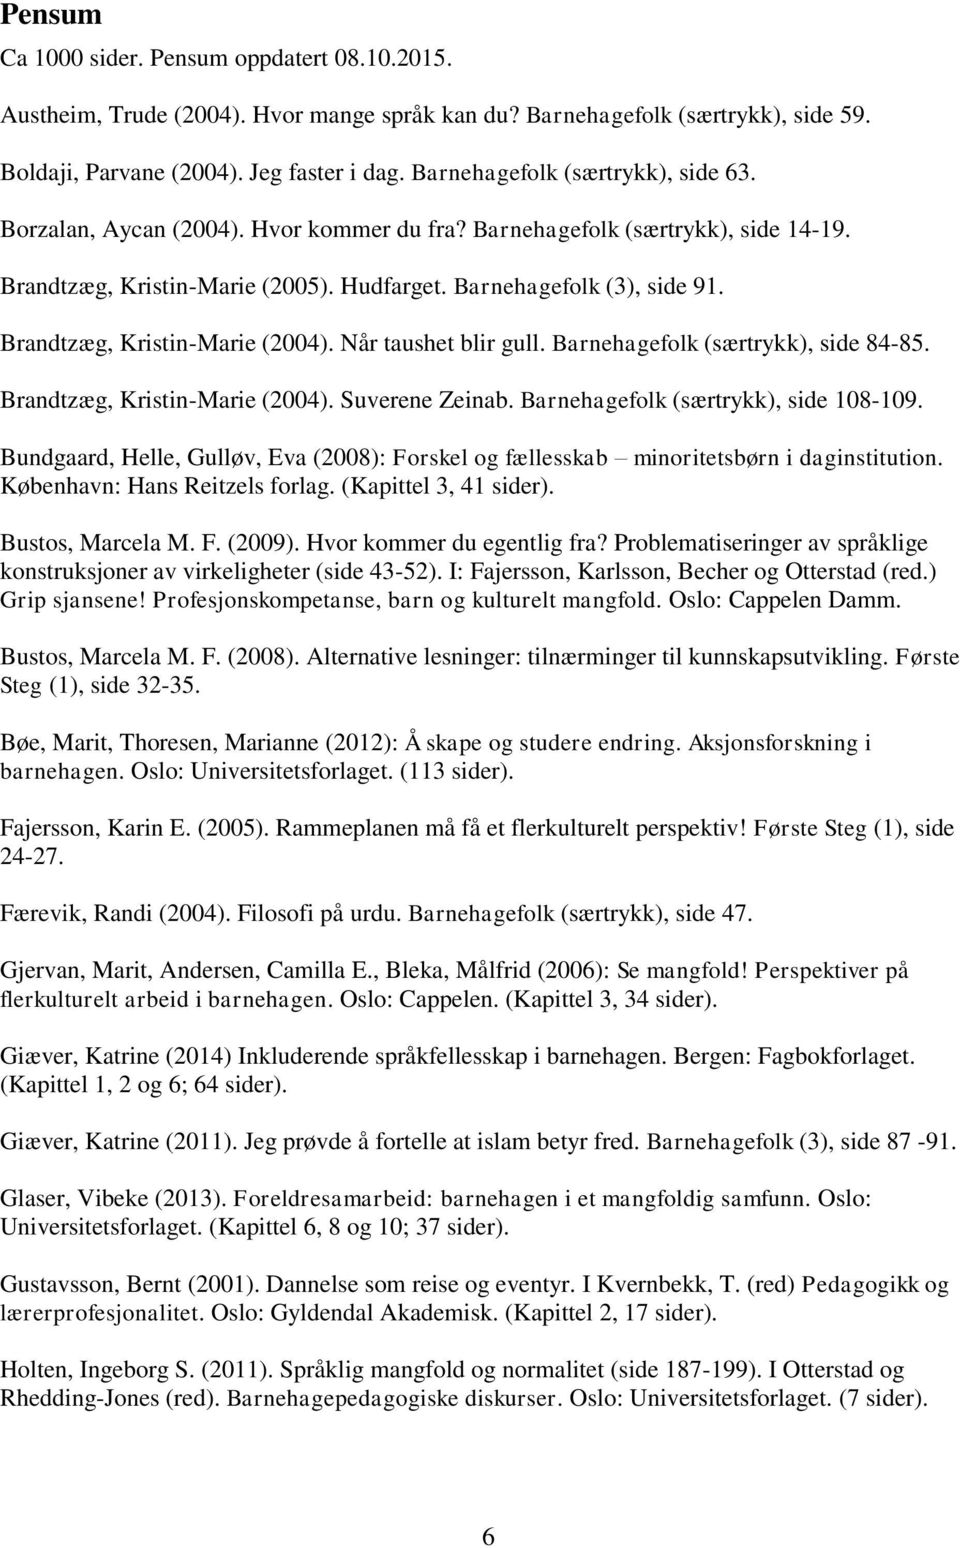 Brandtzæg, Kristin-Marie (2004). Når taushet blir gull. Barnehagefolk (særtrykk), side 84-85. Brandtzæg, Kristin-Marie (2004). Suverene Zeinab. Barnehagefolk (særtrykk), side 108-109.